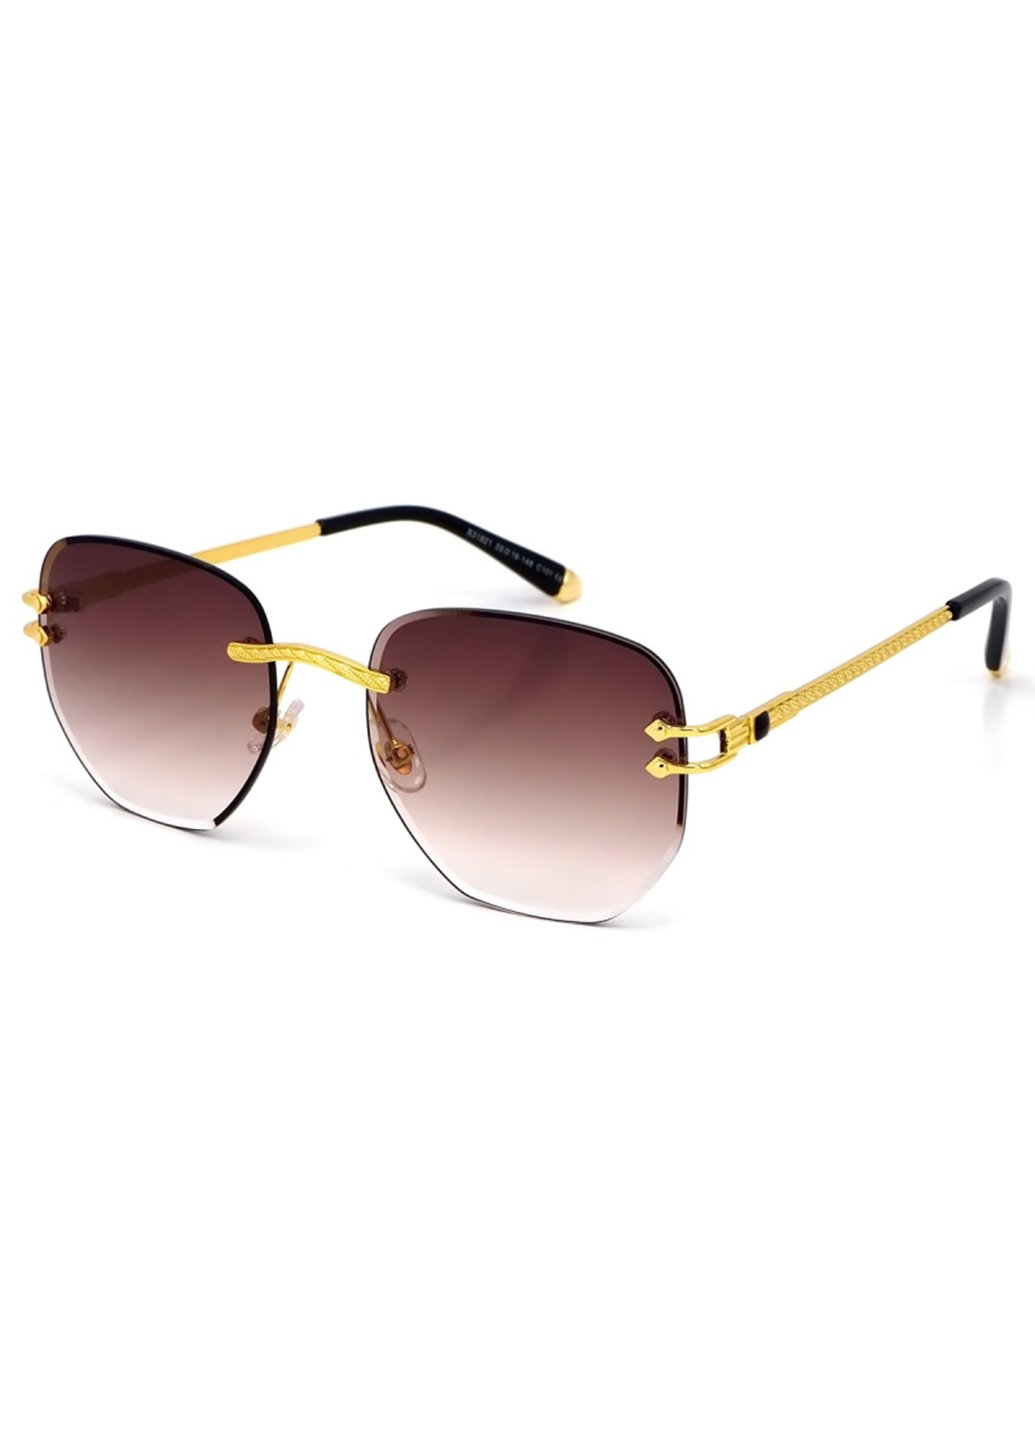 Купить Женские солнцезащитные очки Merlini с поляризацией S31821 117063 - Золотистый в интернет-магазине